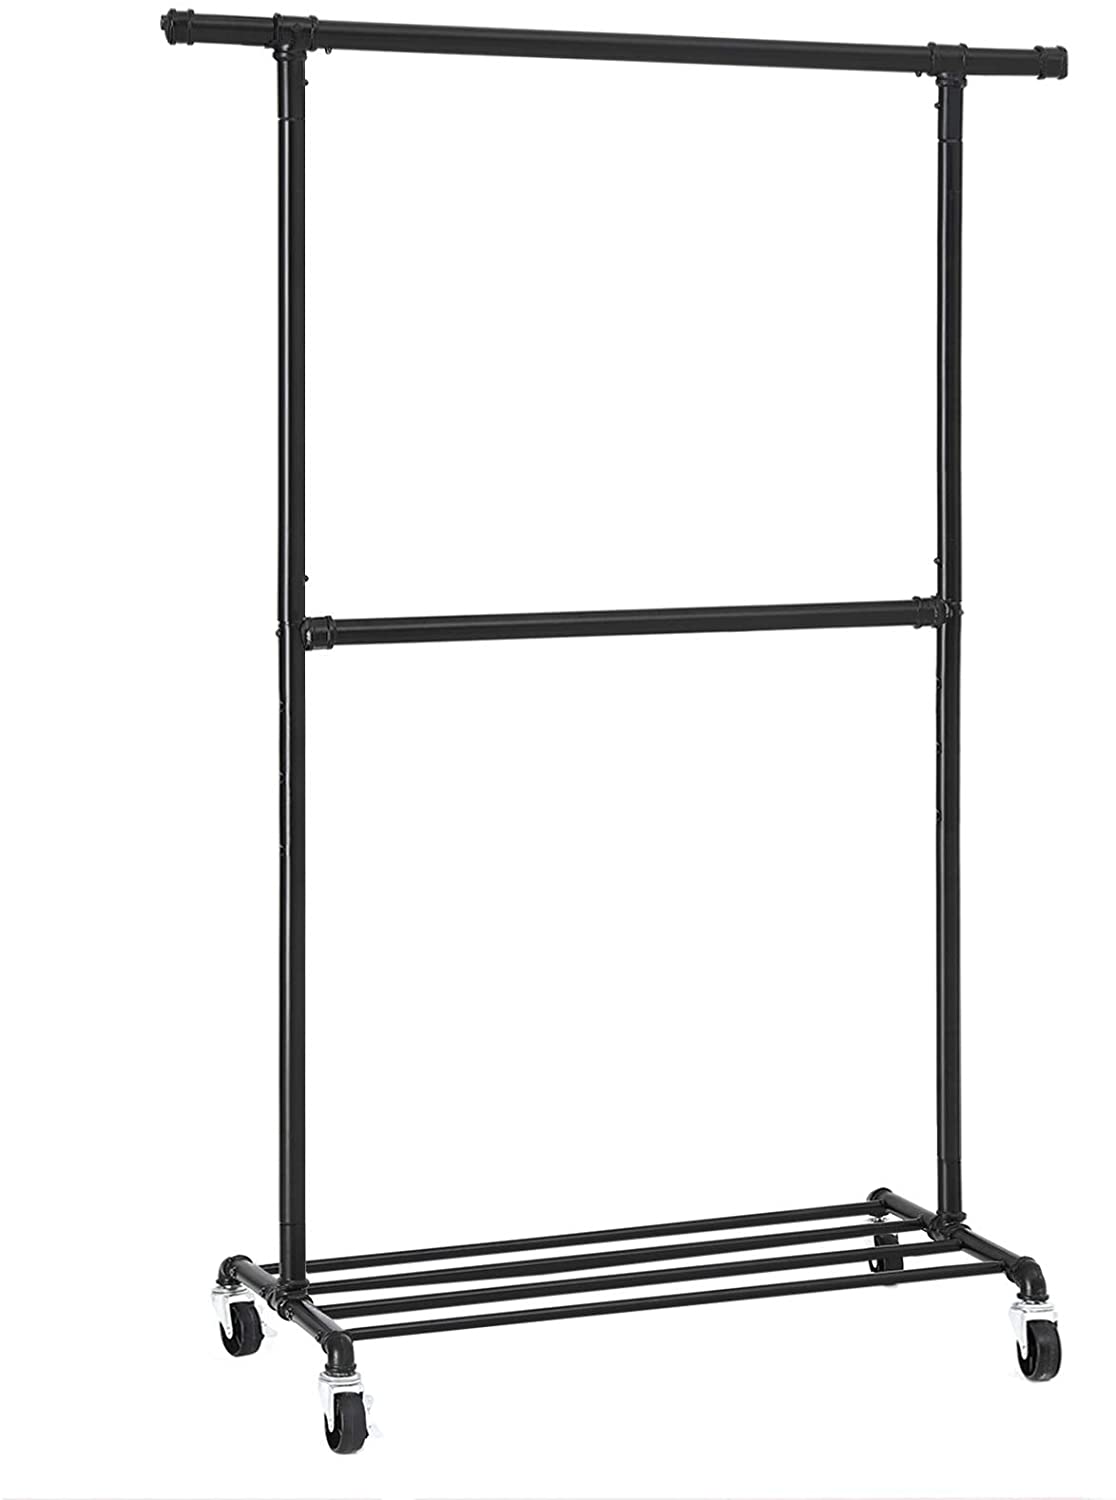 Kledingrek – Garderoberek – Staal – 130 x 49 x 198 cm – Zwart